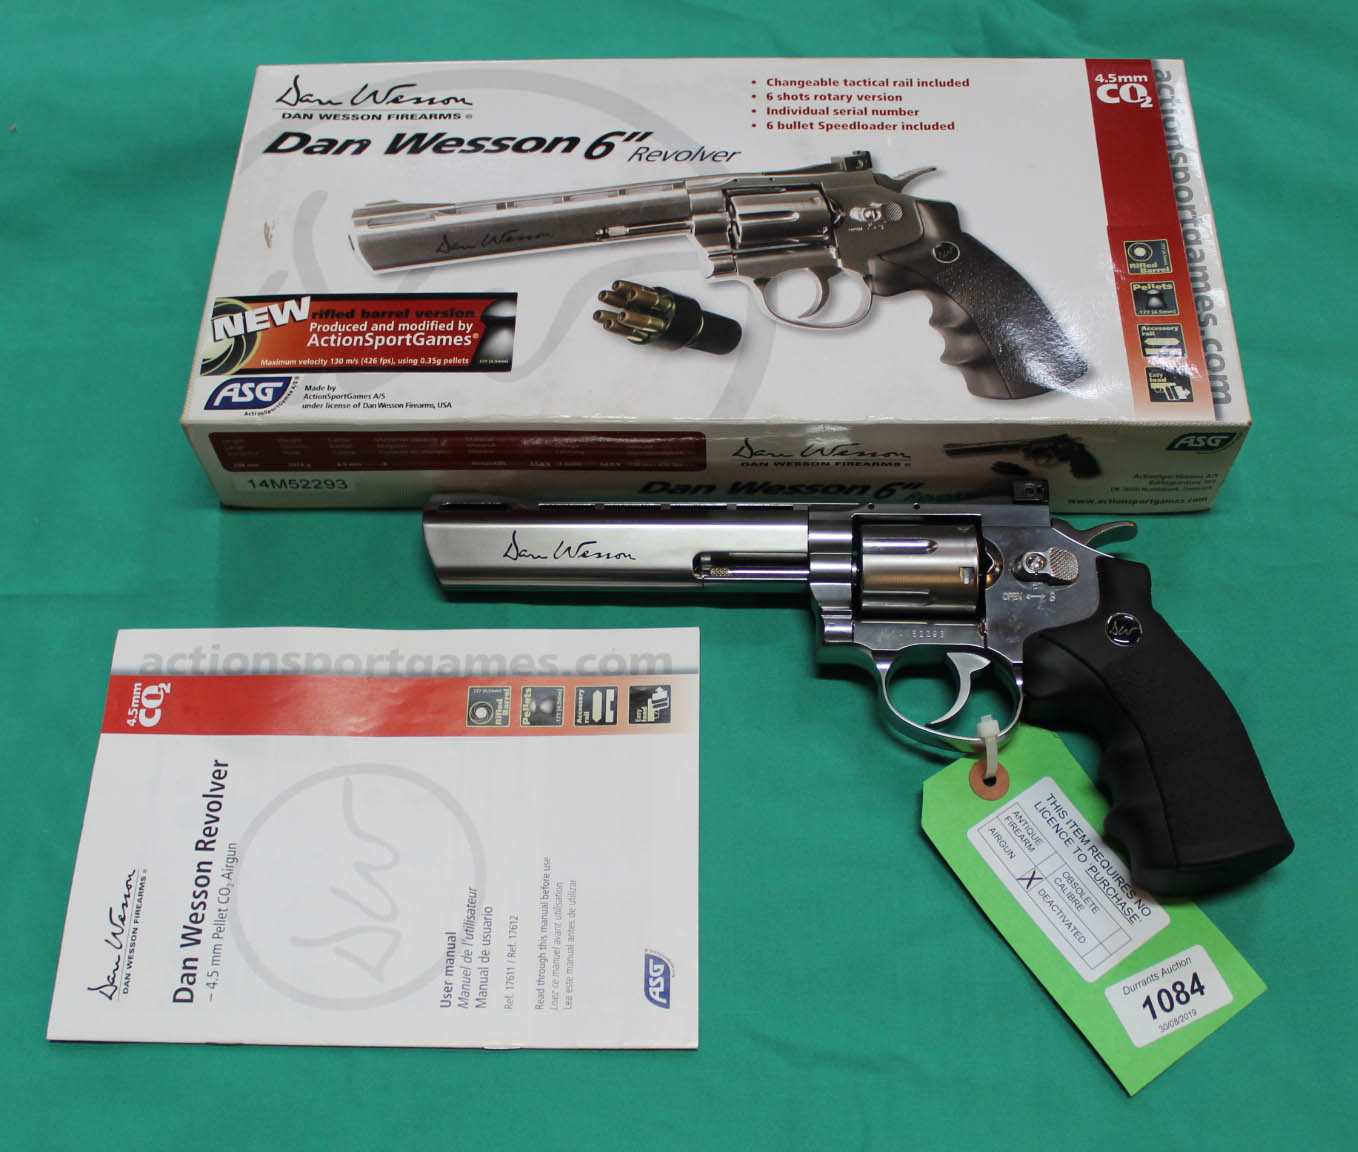 A Dan Wesson 6" revolver .